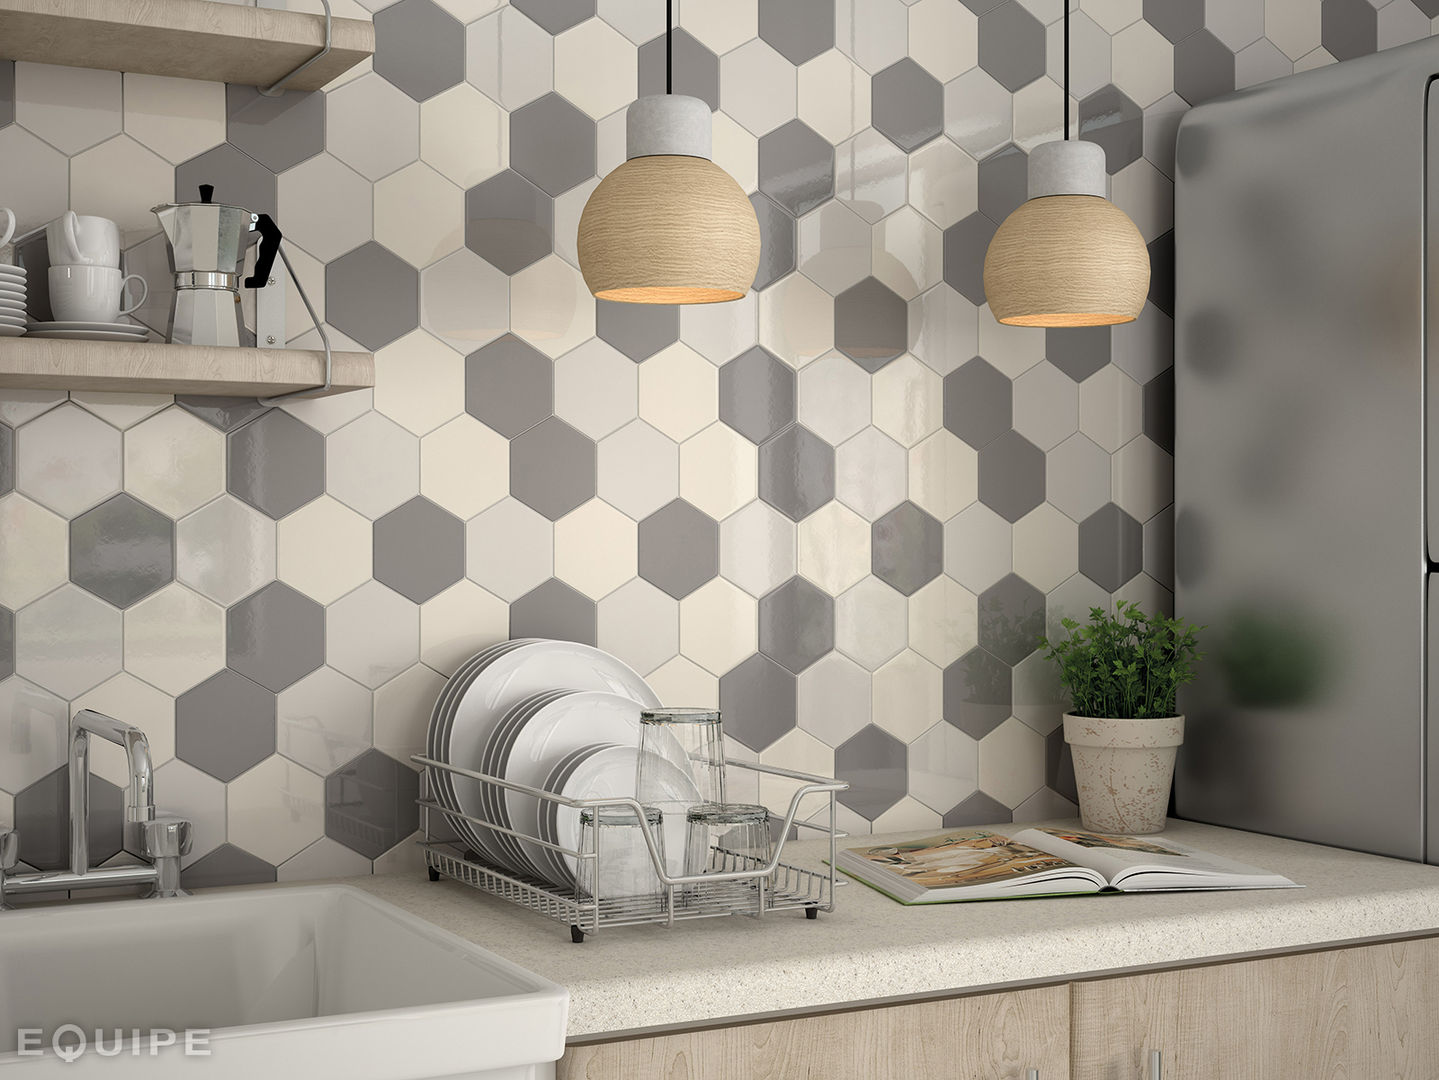 Scale Wall Tile, Equipe Ceramicas Equipe Ceramicas Кухня в стиле модерн Керамика